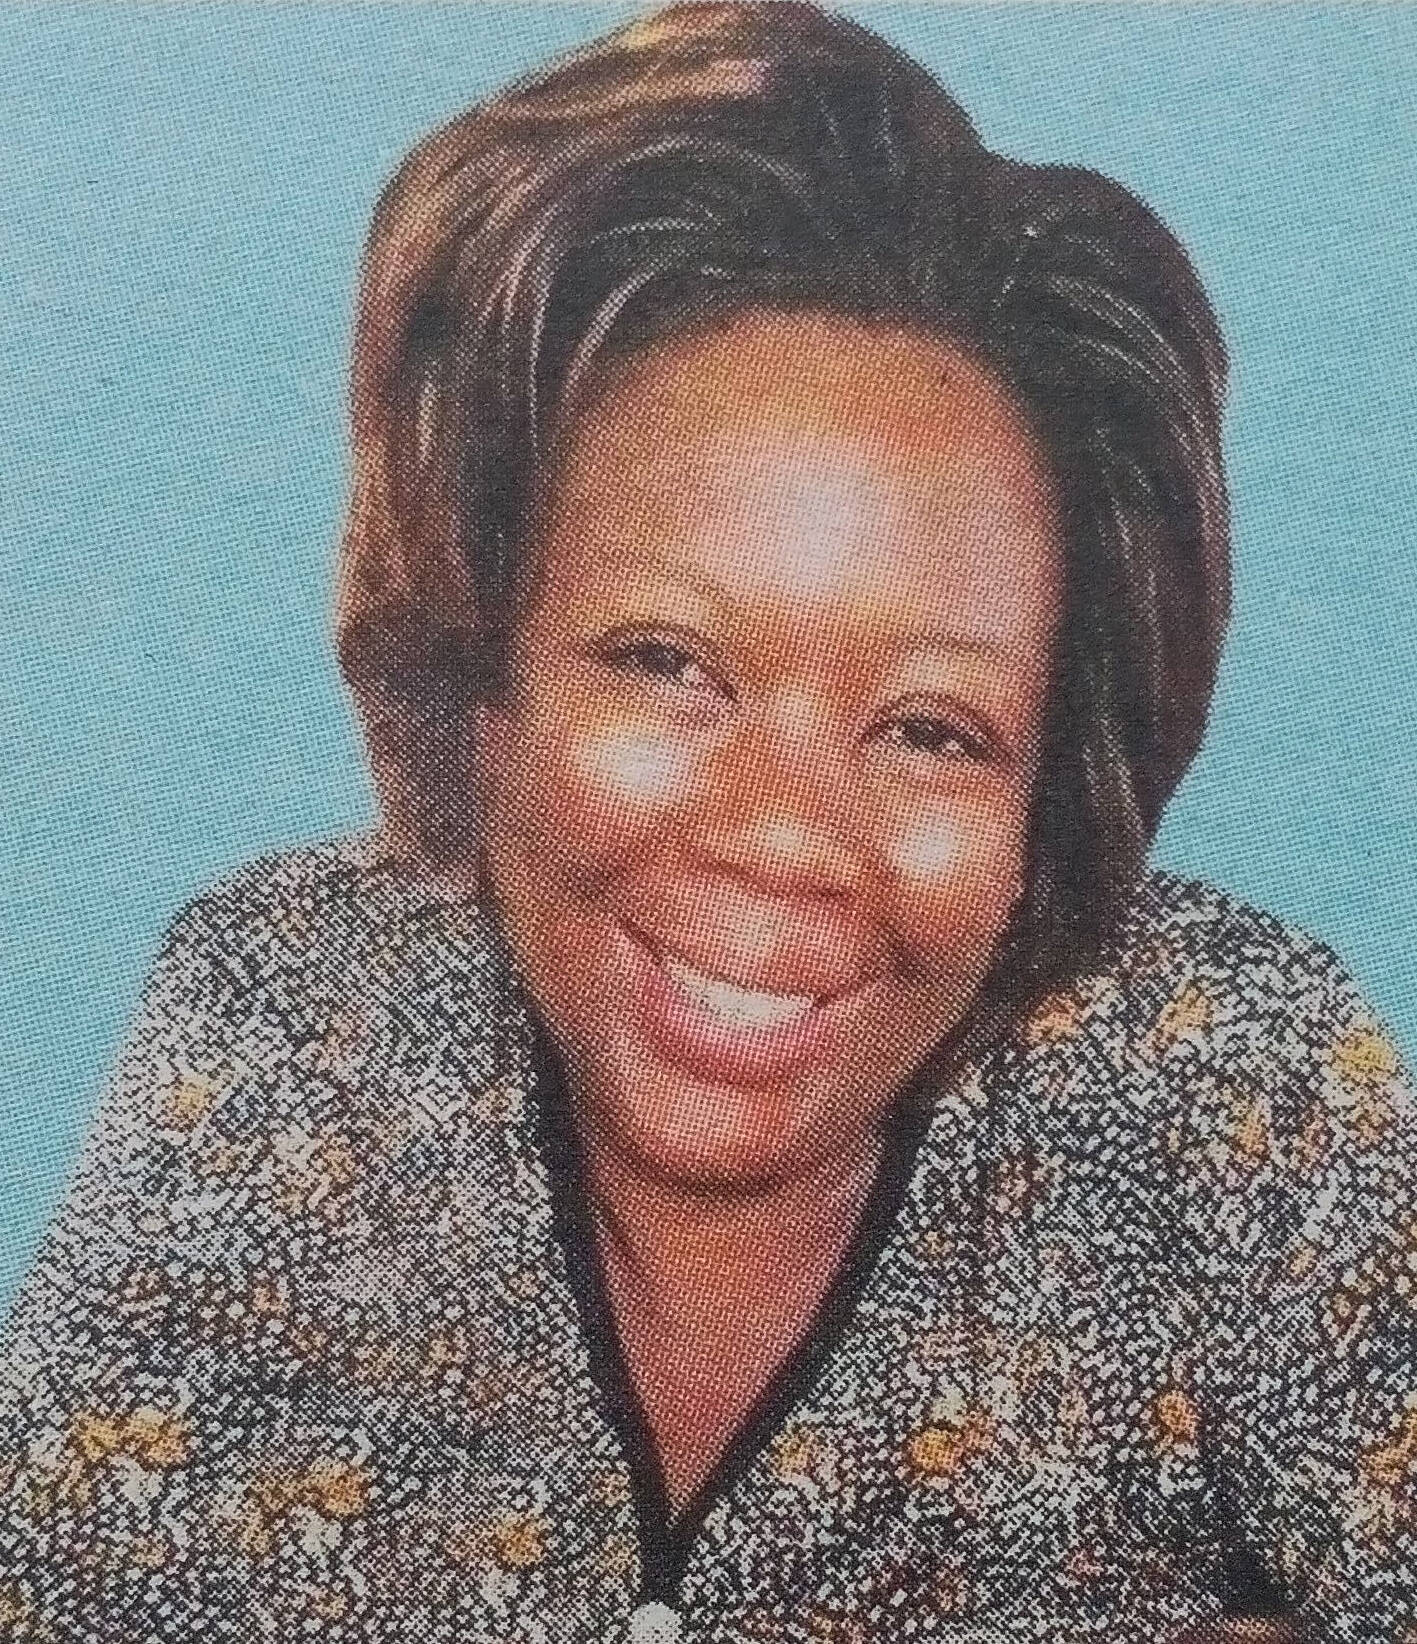 Obituary Image of Lucy Tsuma Okwara Atwa